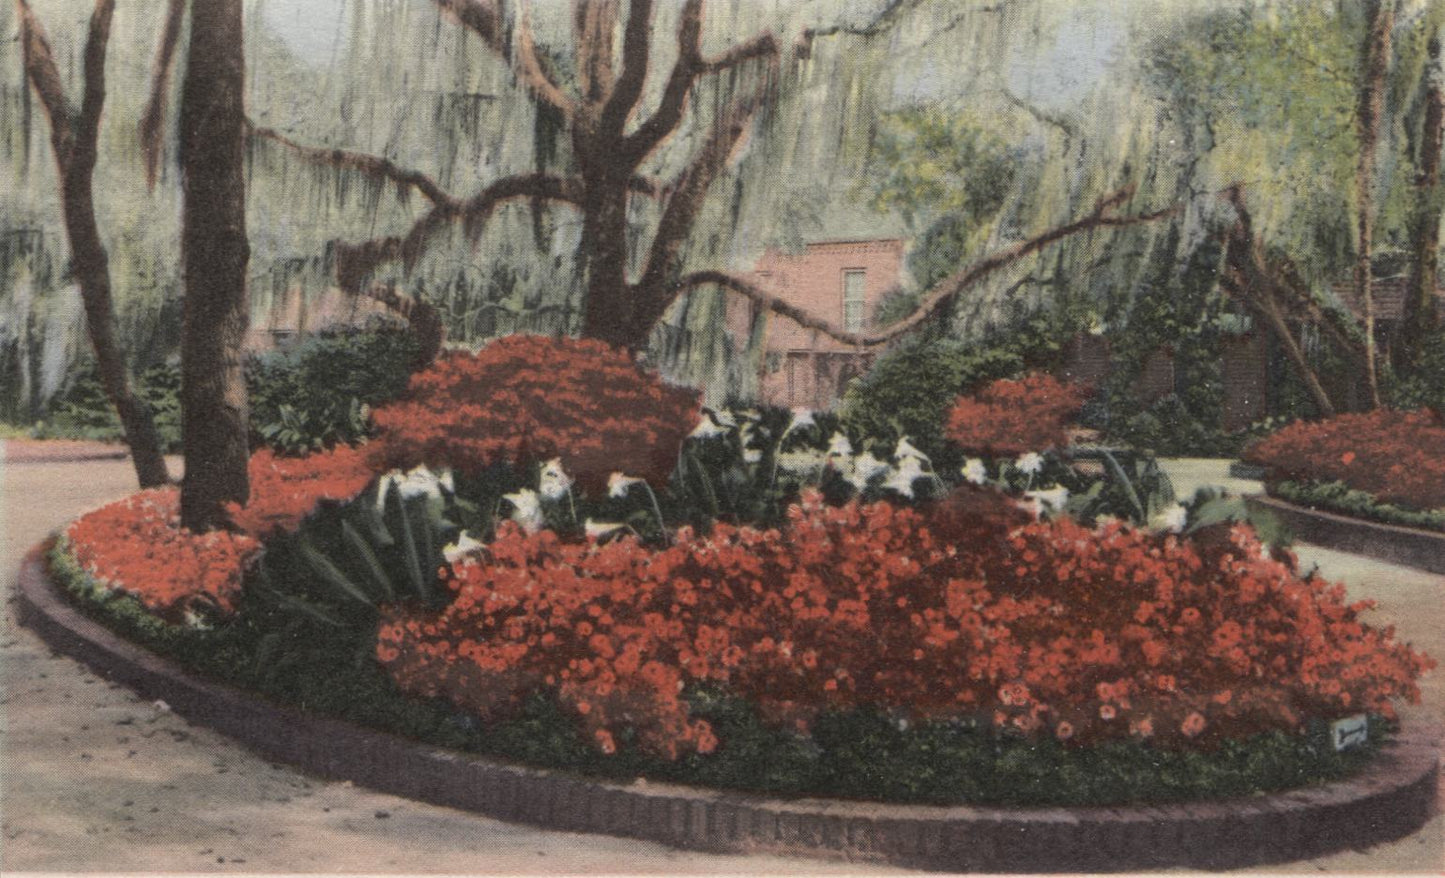 Bellingrath Gardens, Mobile, Alabama Vintage Souvenir Postcard Folder